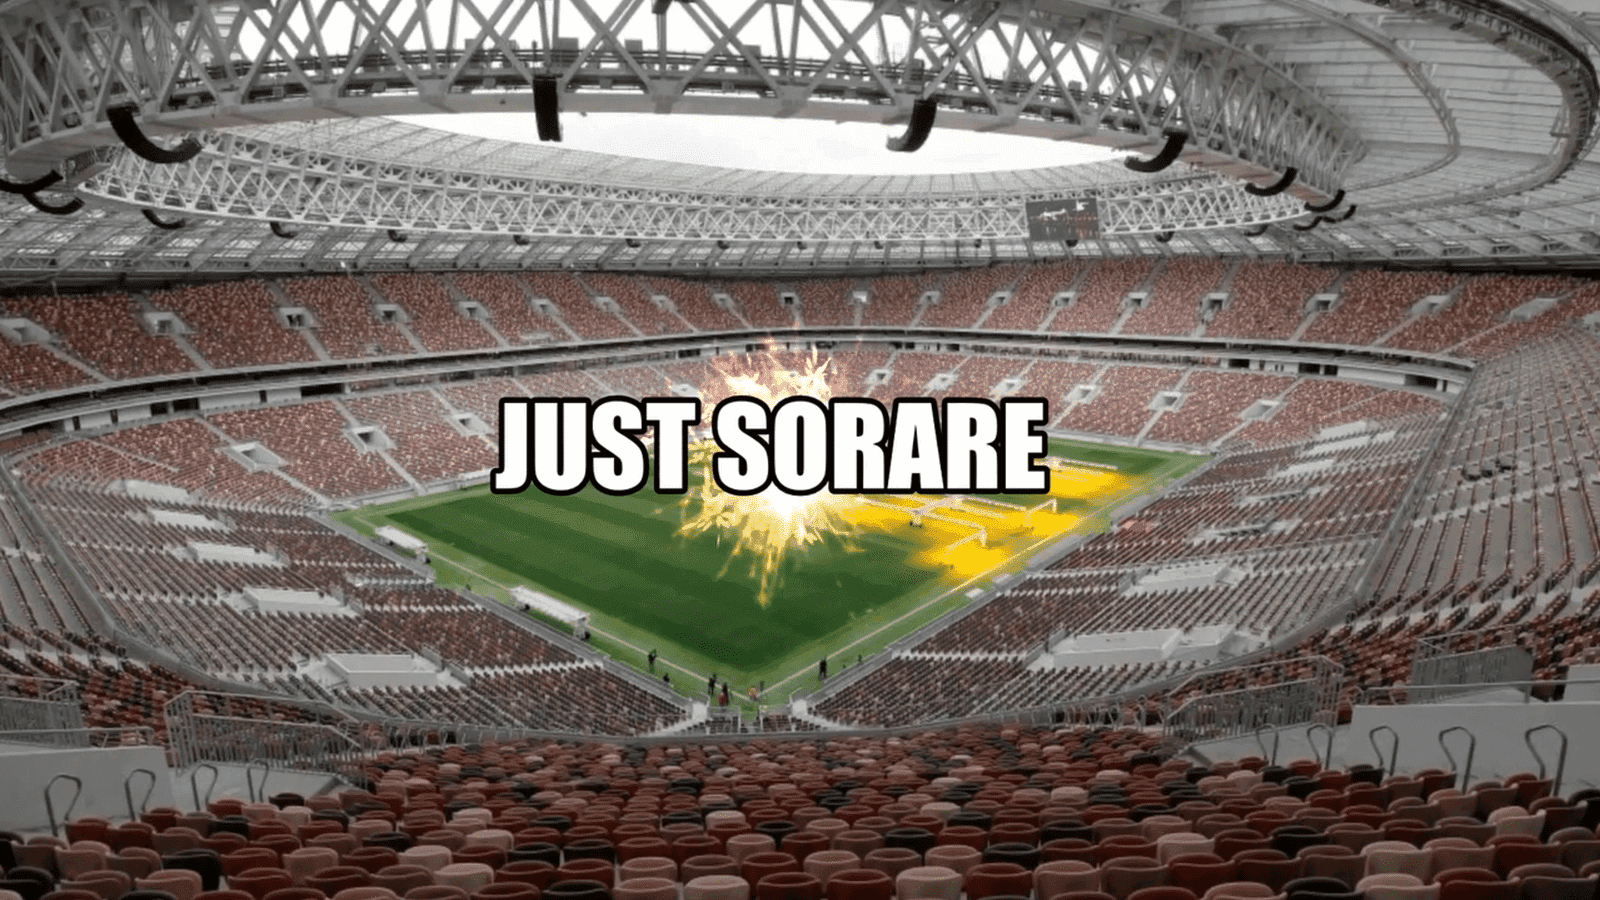 Sorare es un juego de fútbol de fantasía basado en criptomonedas que ha ganado popularidad debido a su capacidad para ser realistamente entretenido y rentable.